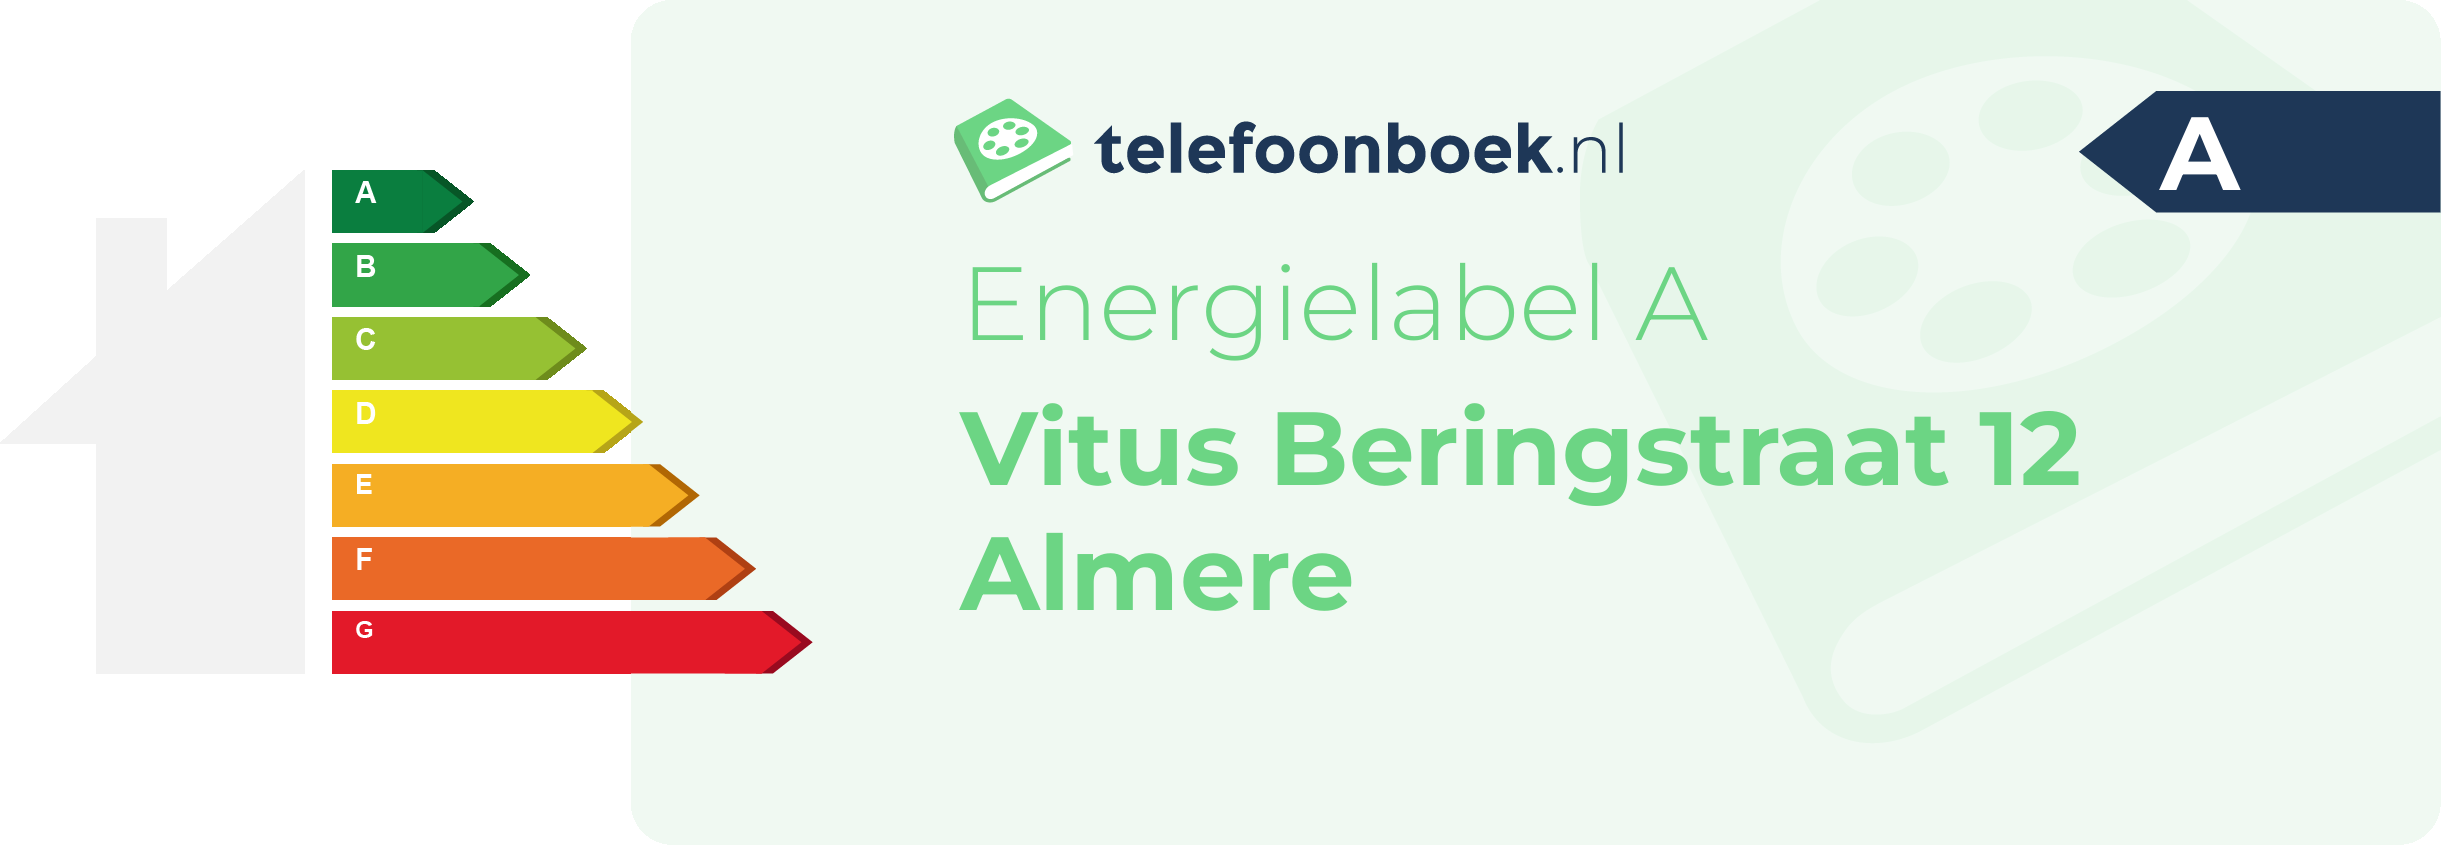 Energielabel Vitus Beringstraat 12 Almere